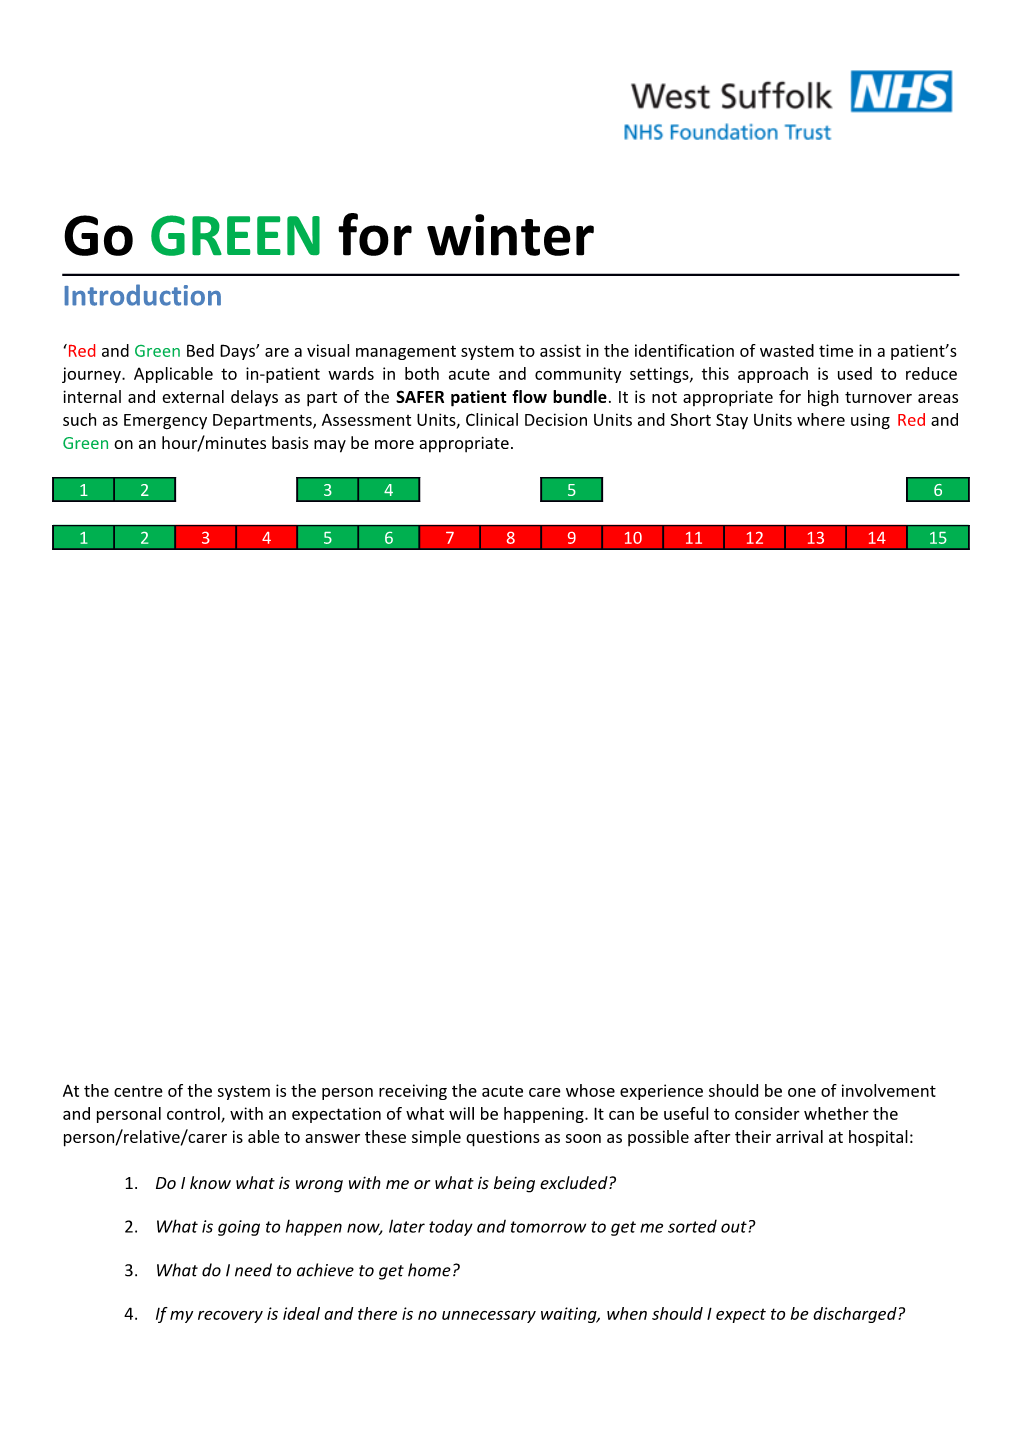 Go GREEN for Winter